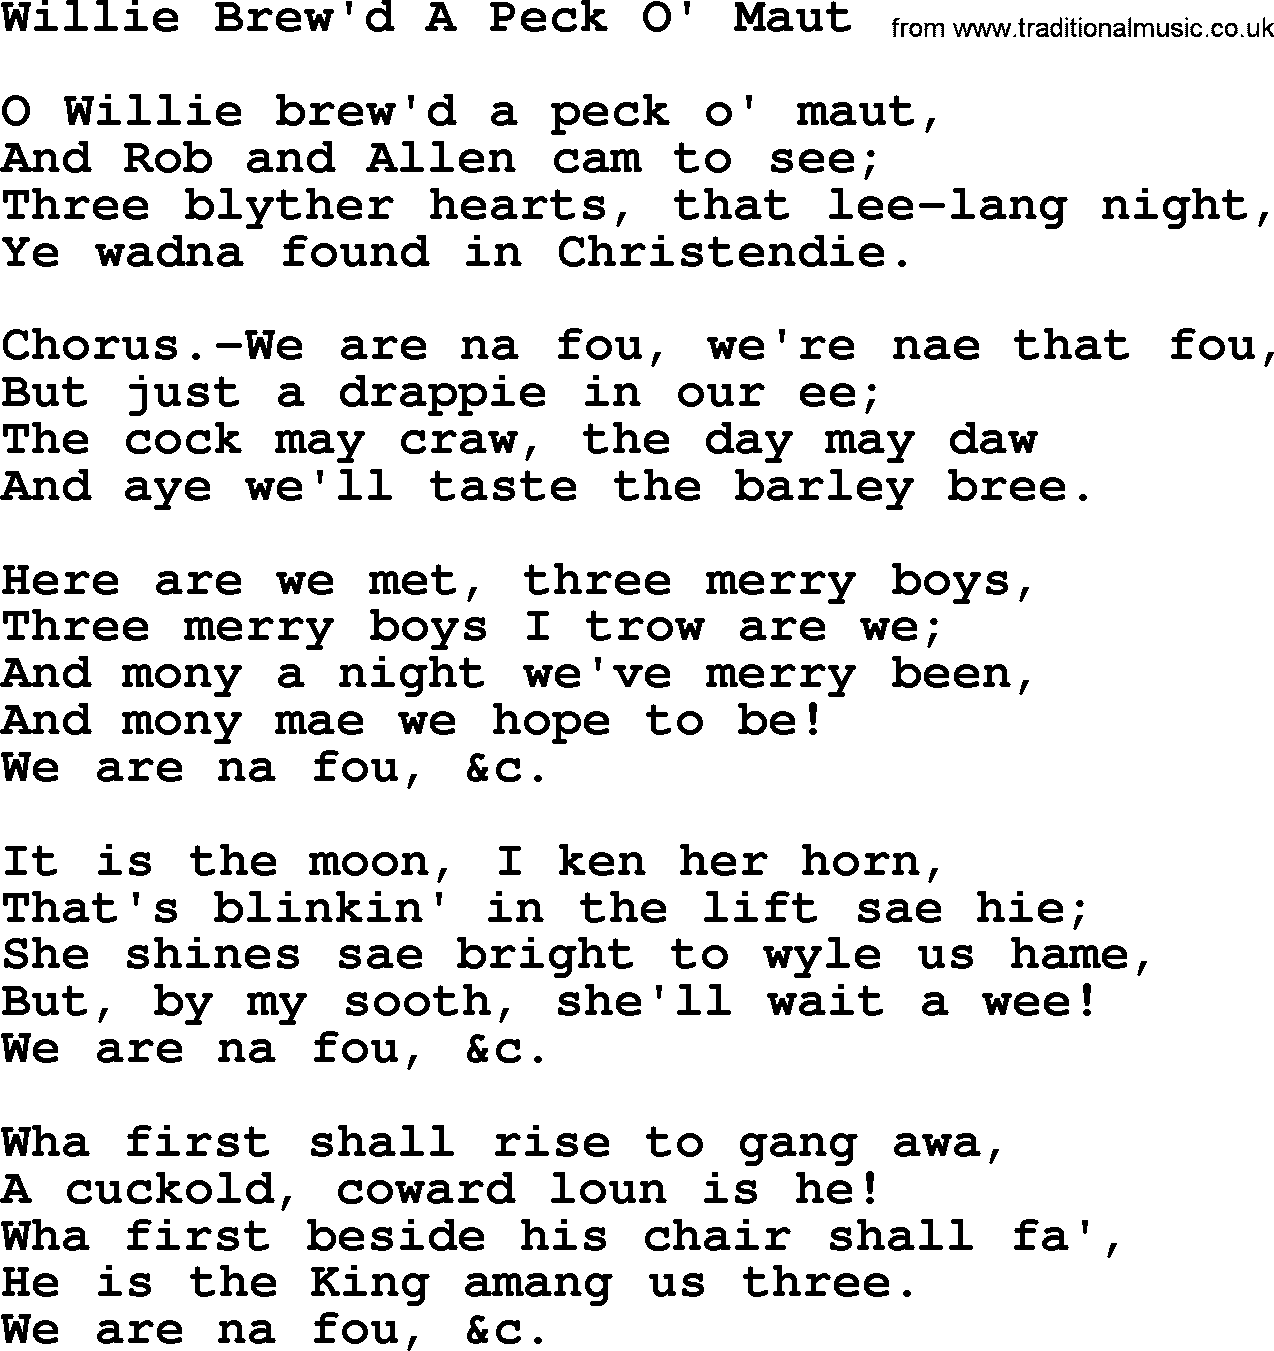 Robert Burns Songs & Lyrics: Willie Brew'd A Peck O' Maut